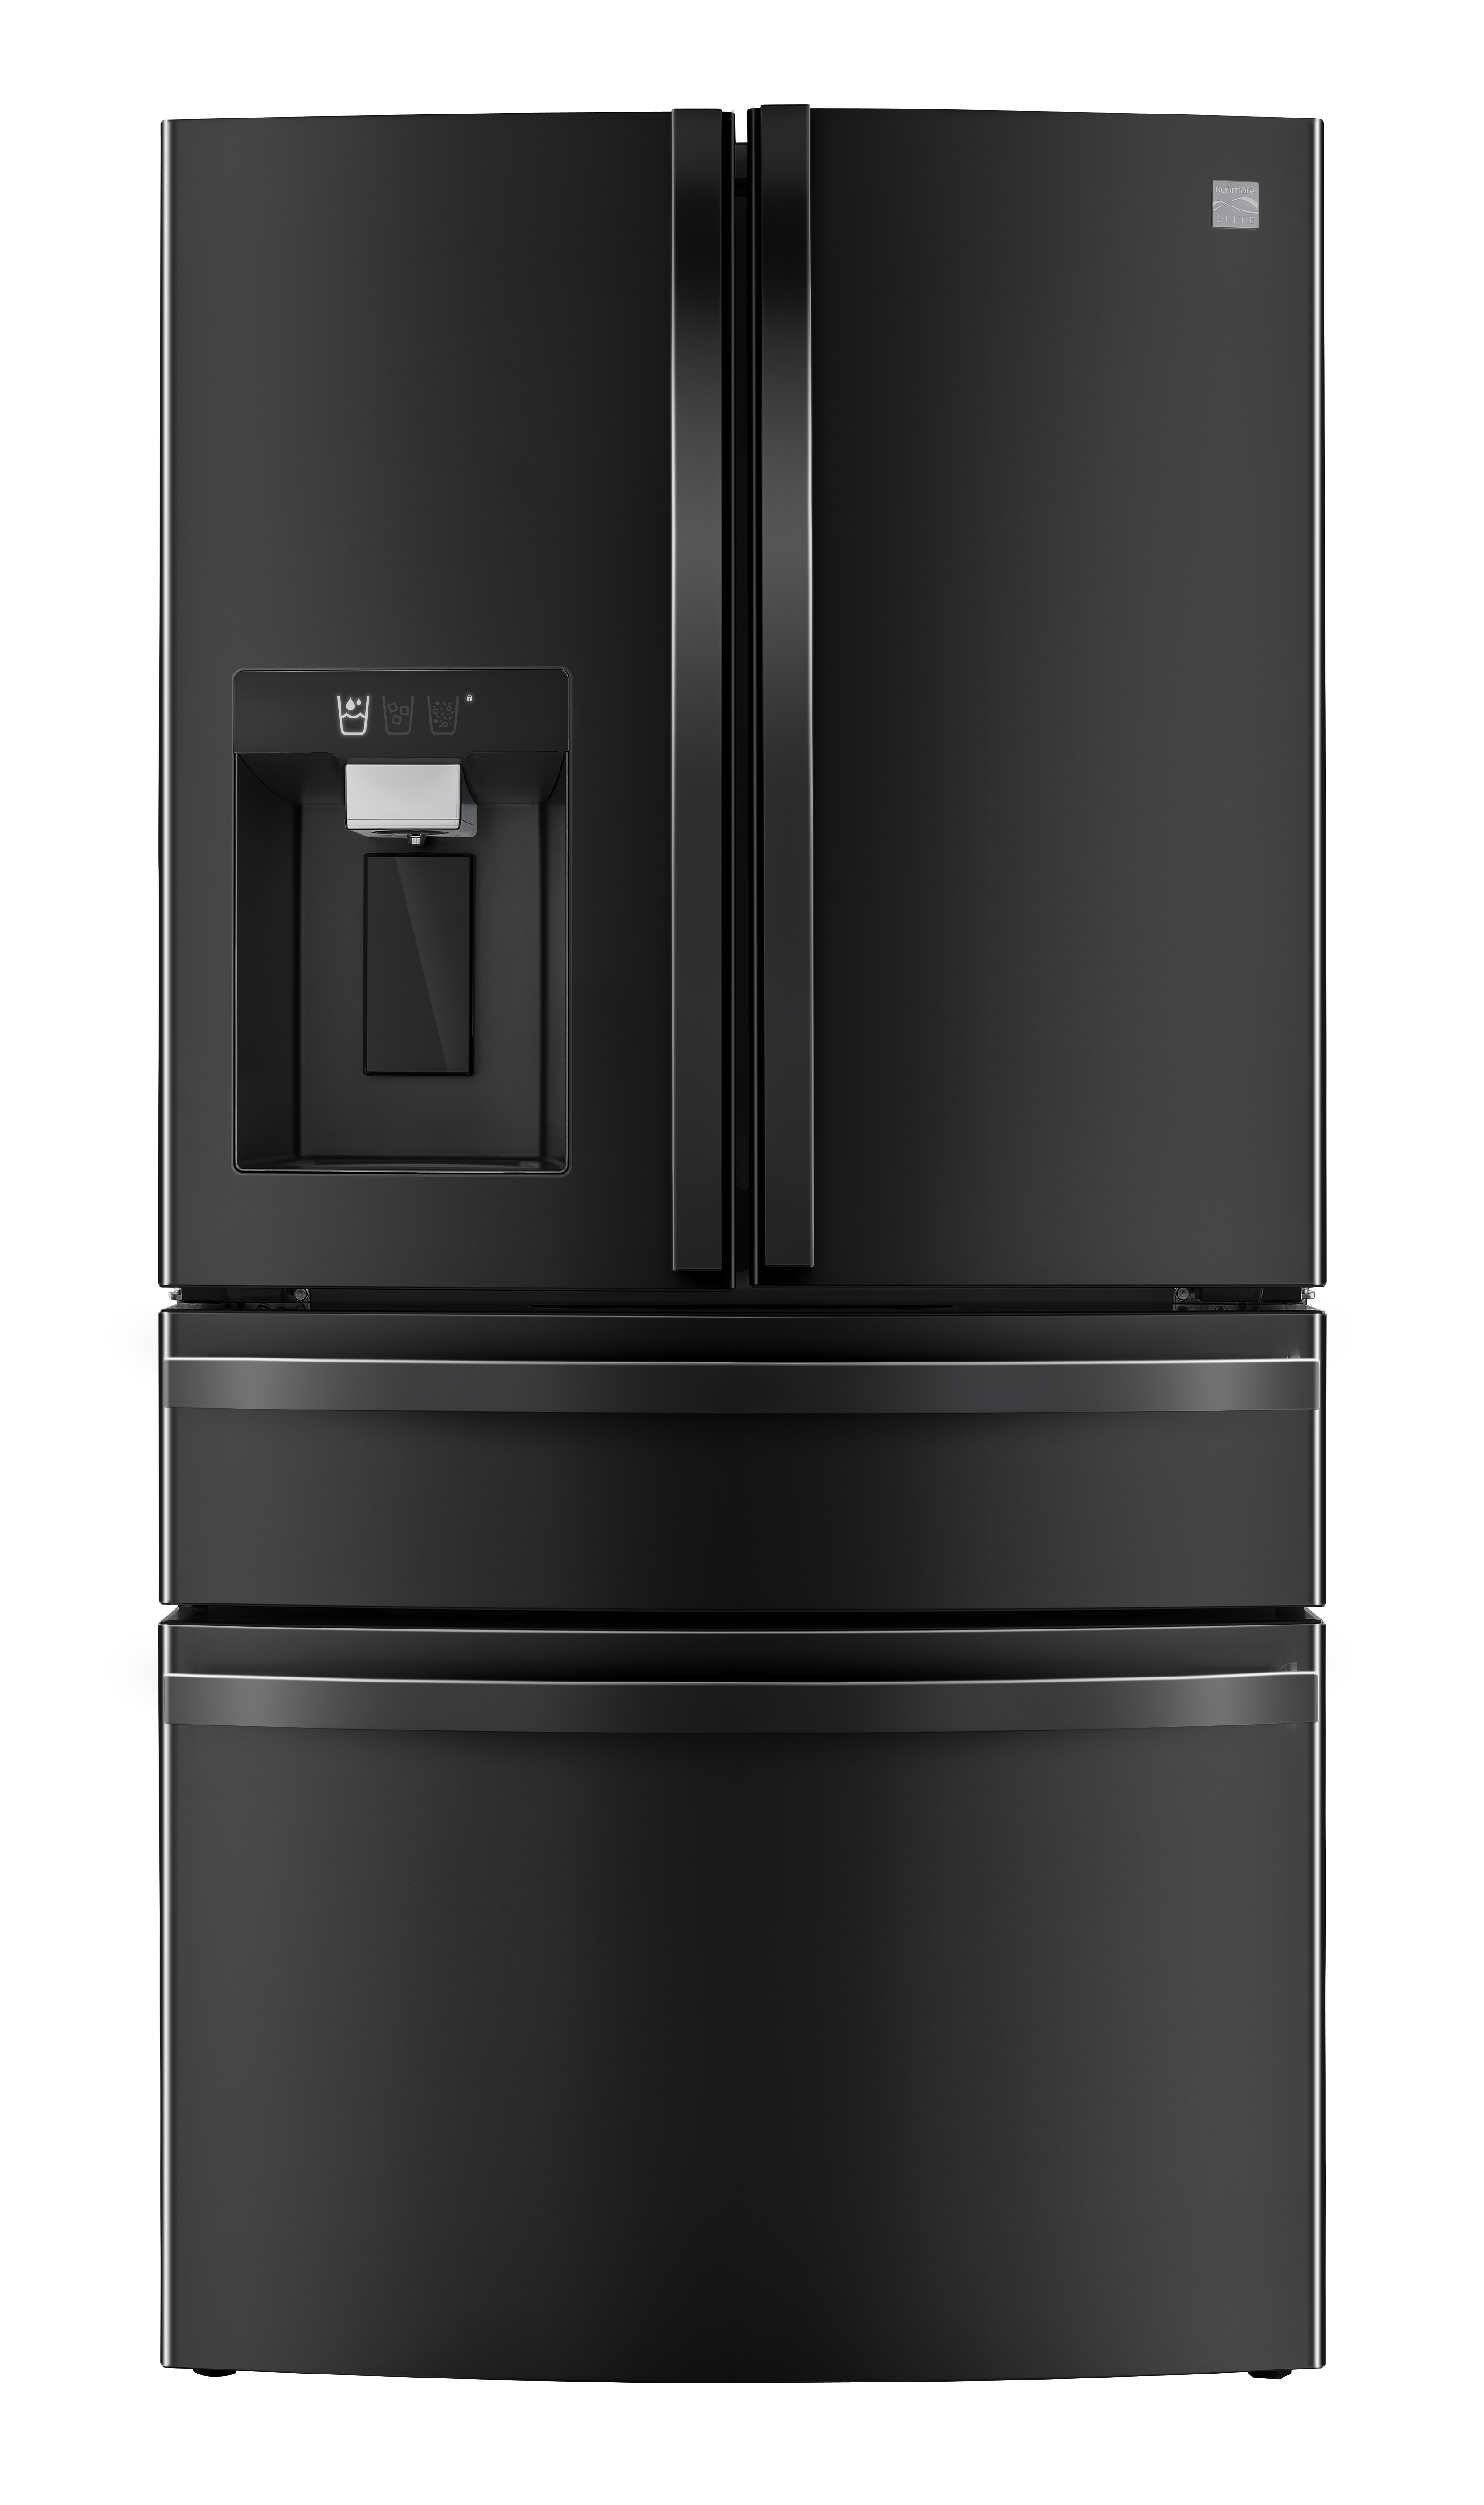 Kenmore Elite 72699 29.5 cu. ft. Smart 4-Door French Door Refrigerator - Black